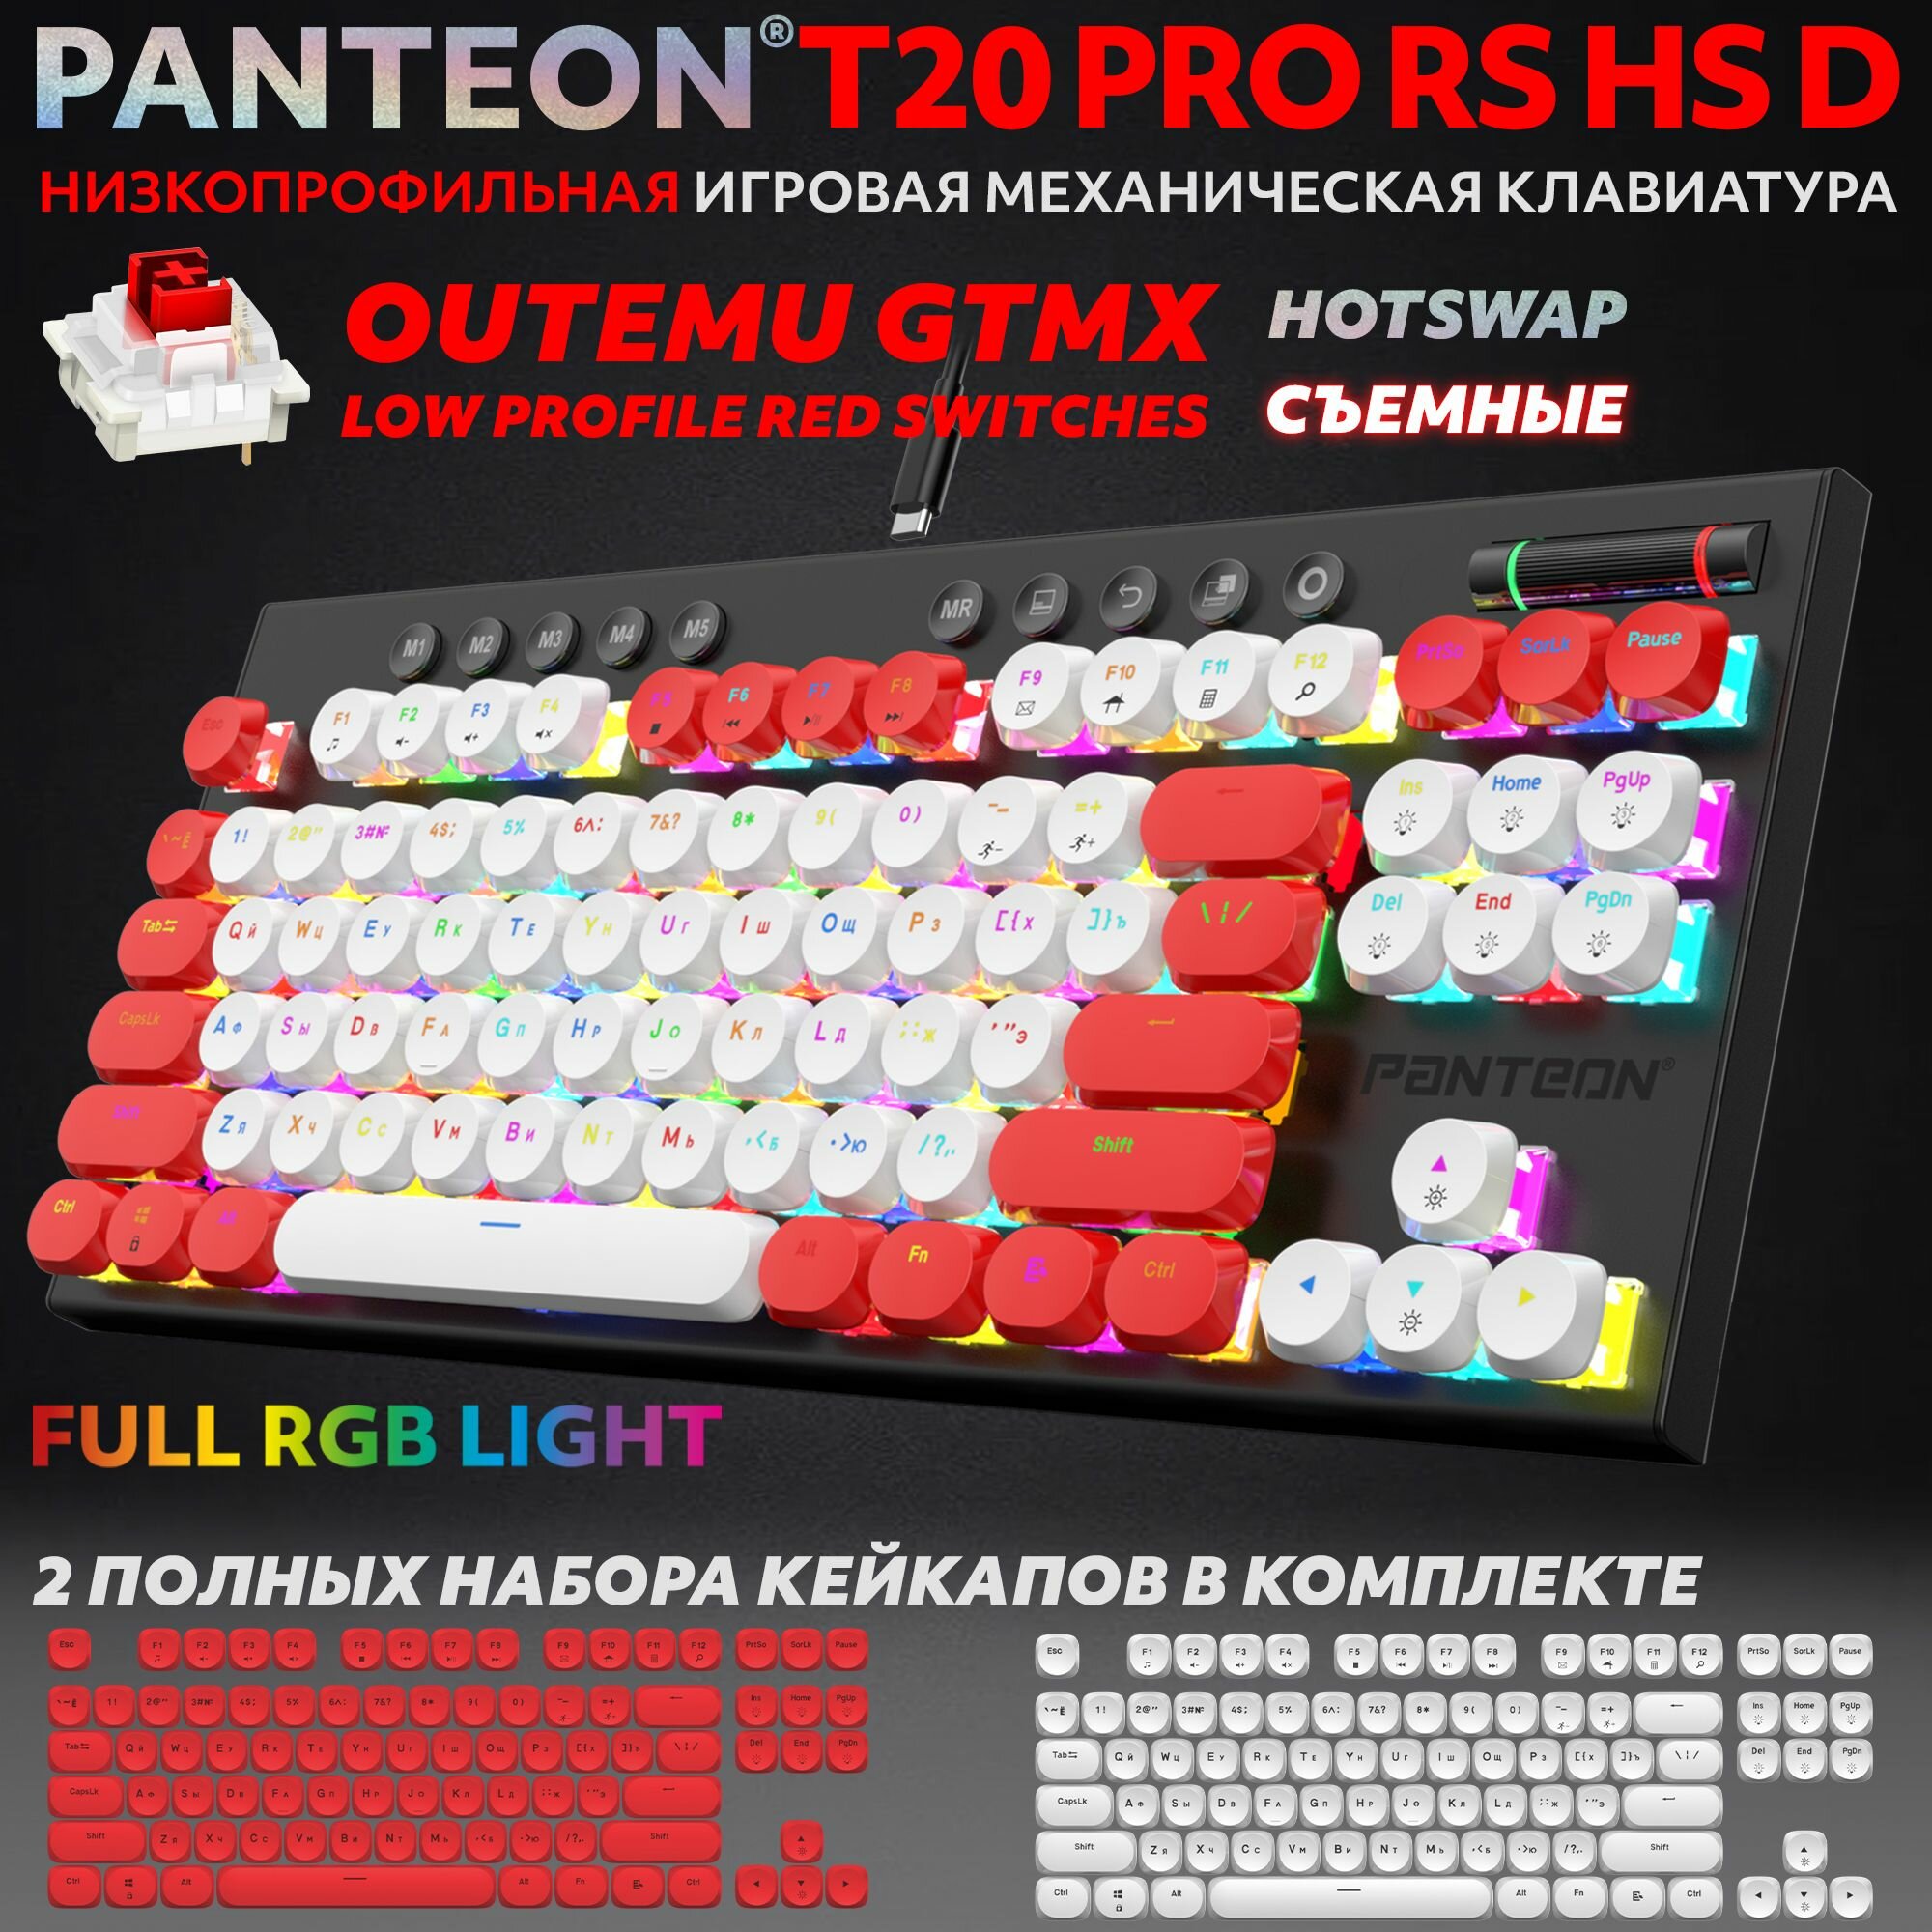 PANTEON T20 PRO BS HS D Black-White (53) Механическая низкопрофильная программируемая клавиатура (TKL 80% подсветка LED RGB Outemu GTMX LOW PROFILE Black 87+11 кл HotSwap 2 полных набора колпачков в комплекте USB) цвет: черный-белый (53)